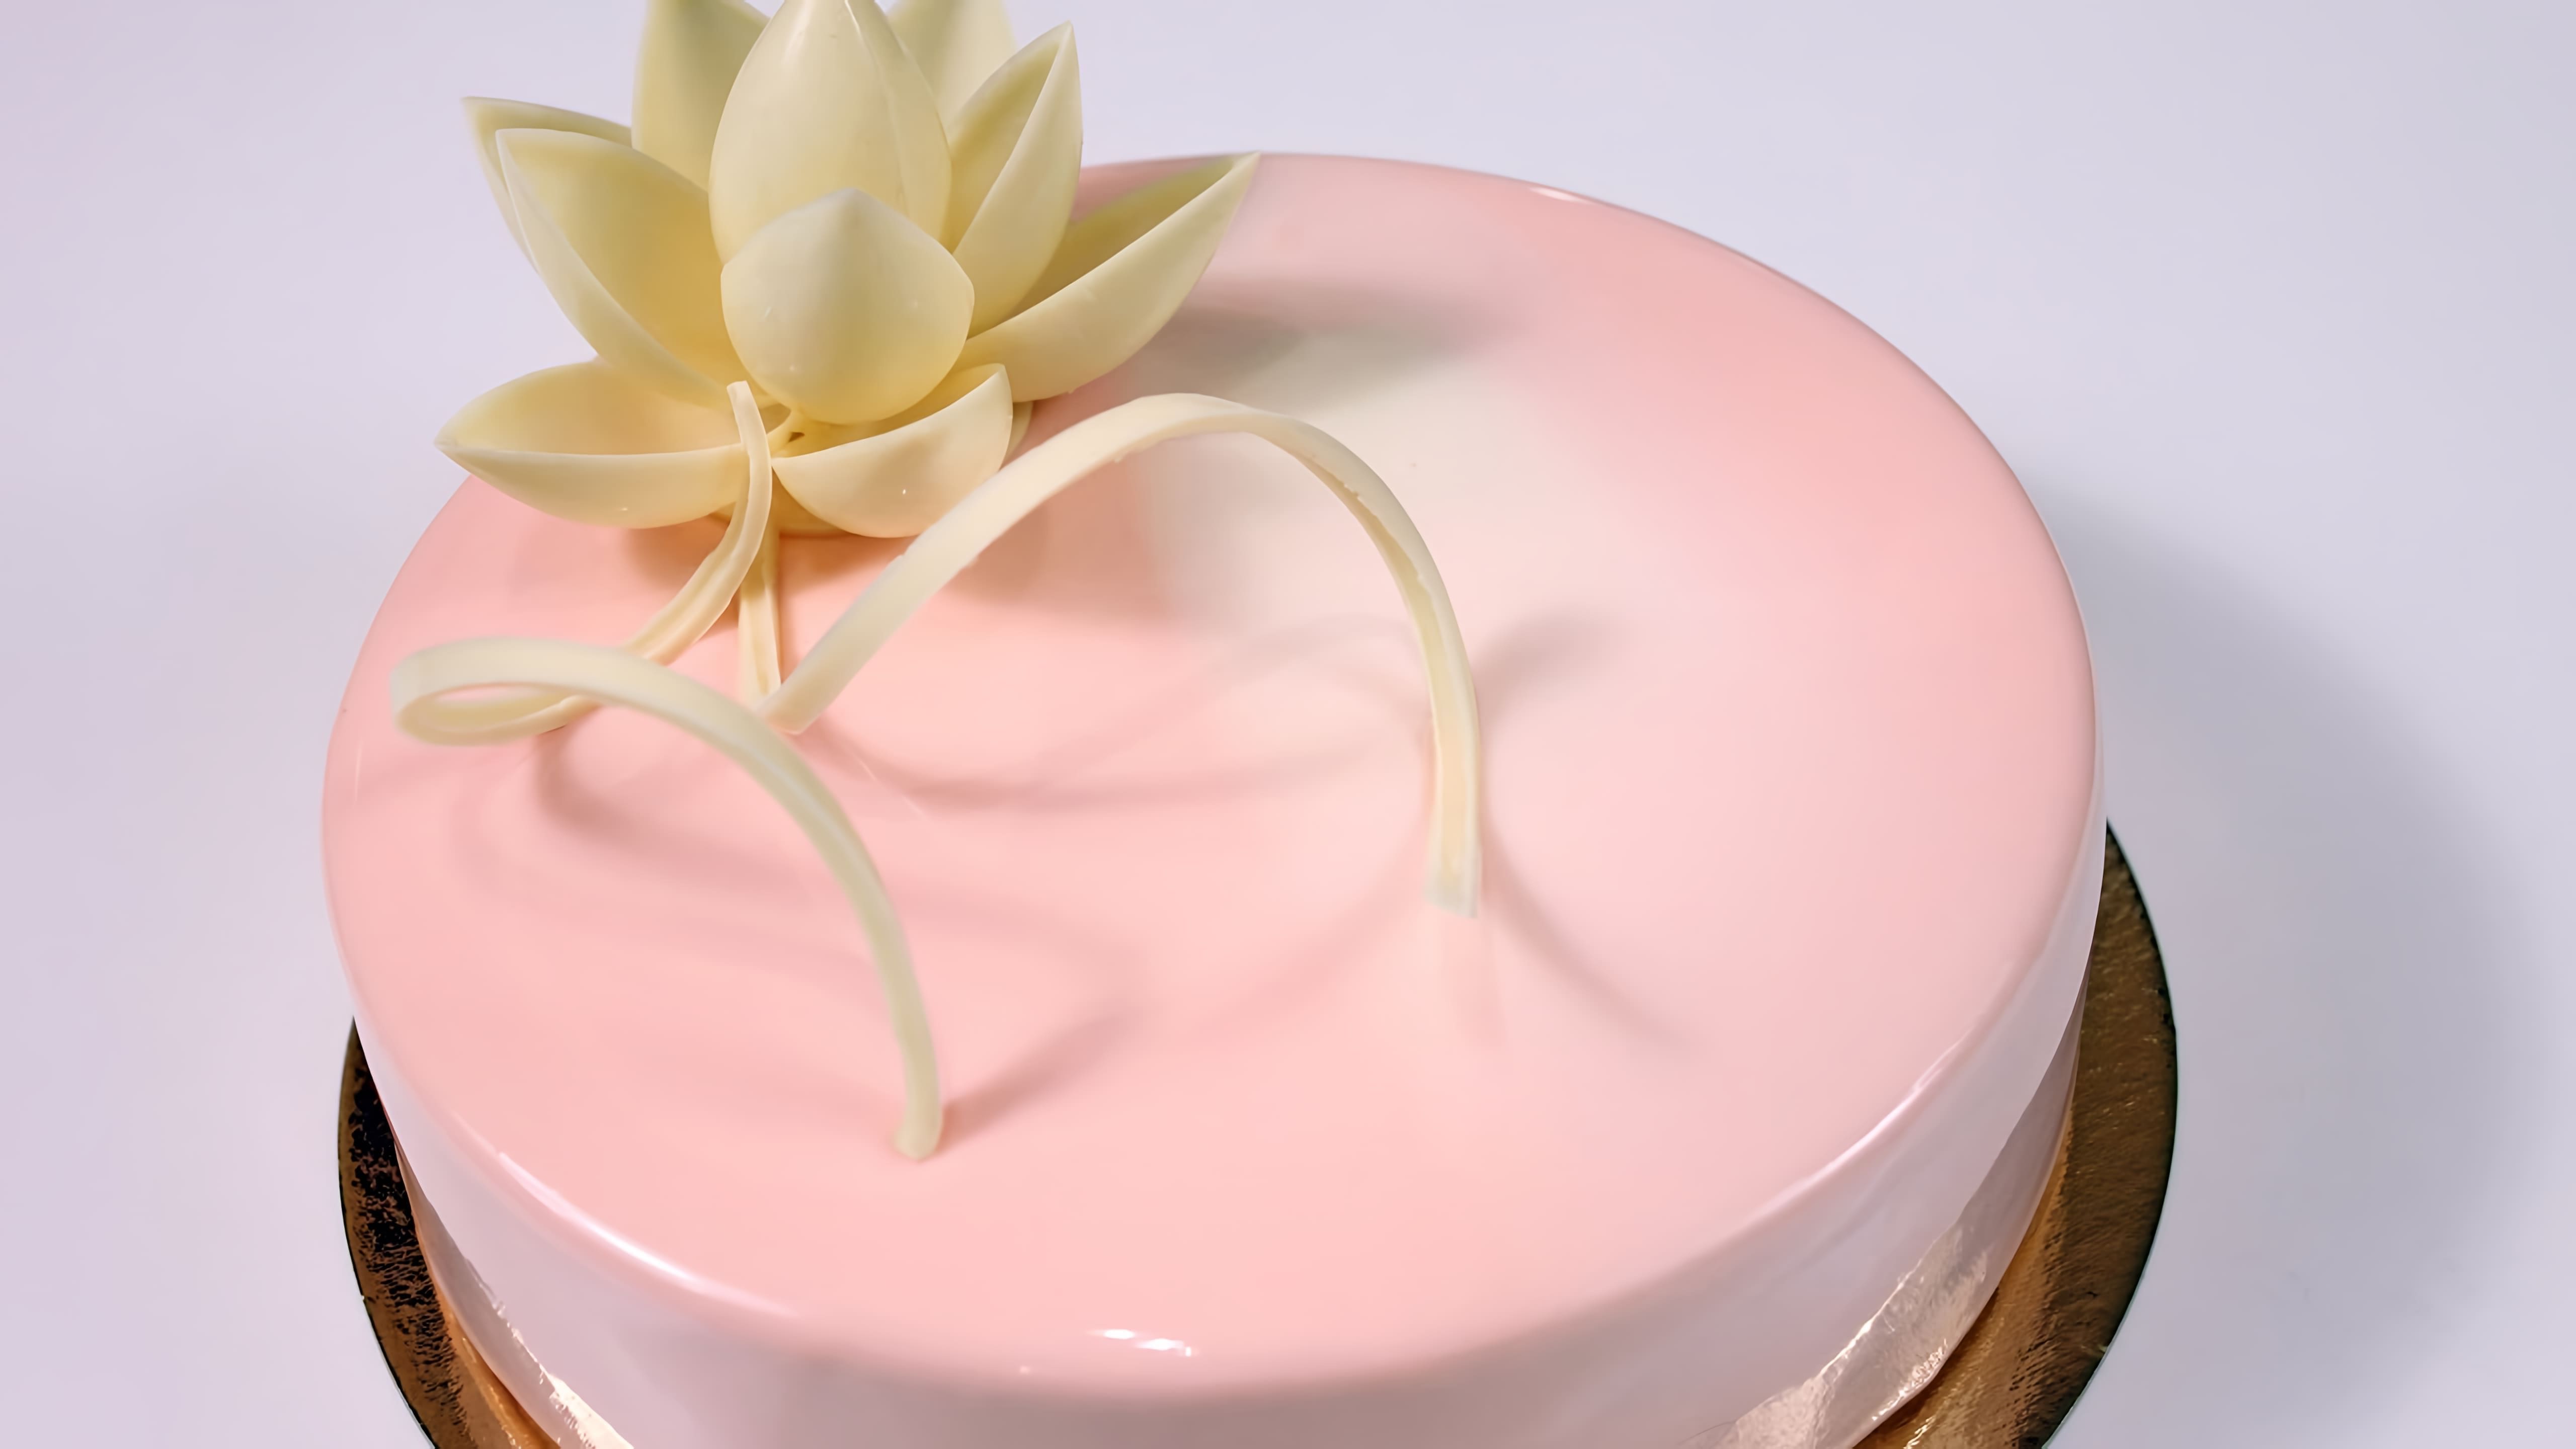 Муссовый торт - это десерт, который стал очень популярным в последнее время